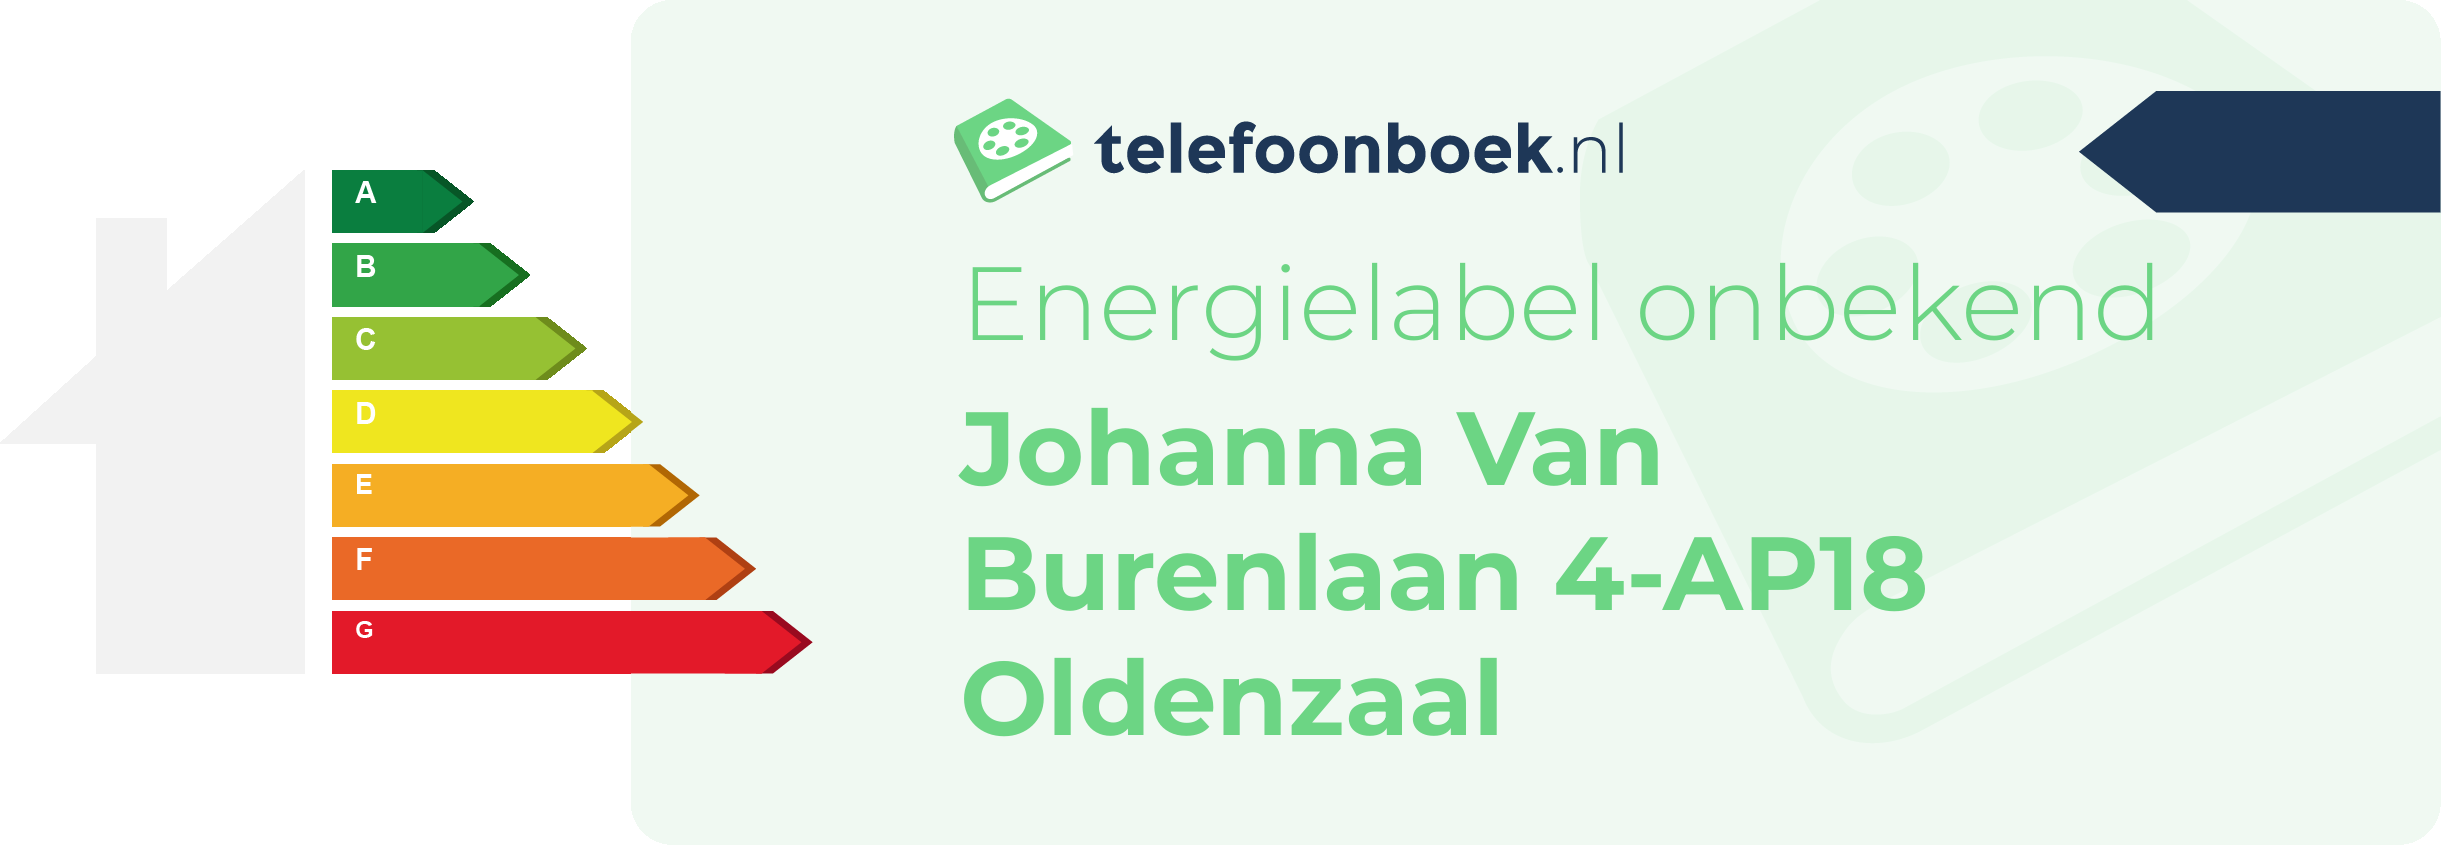 Energielabel Johanna Van Burenlaan 4-AP18 Oldenzaal